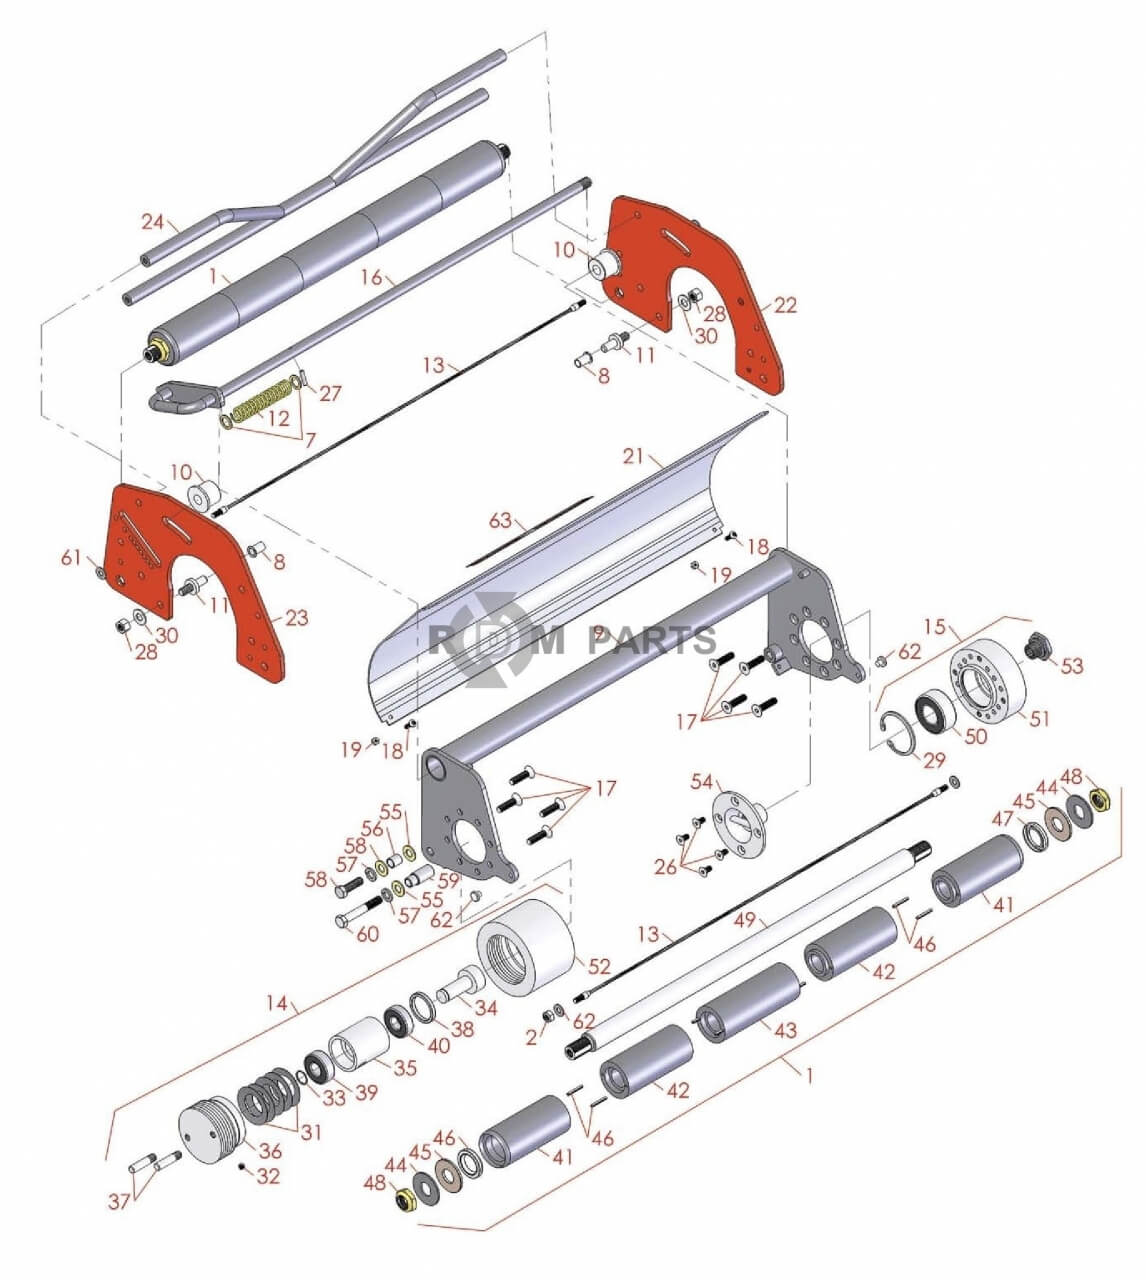 Replacement parts for Multigreen - Jacobsen G-plex III